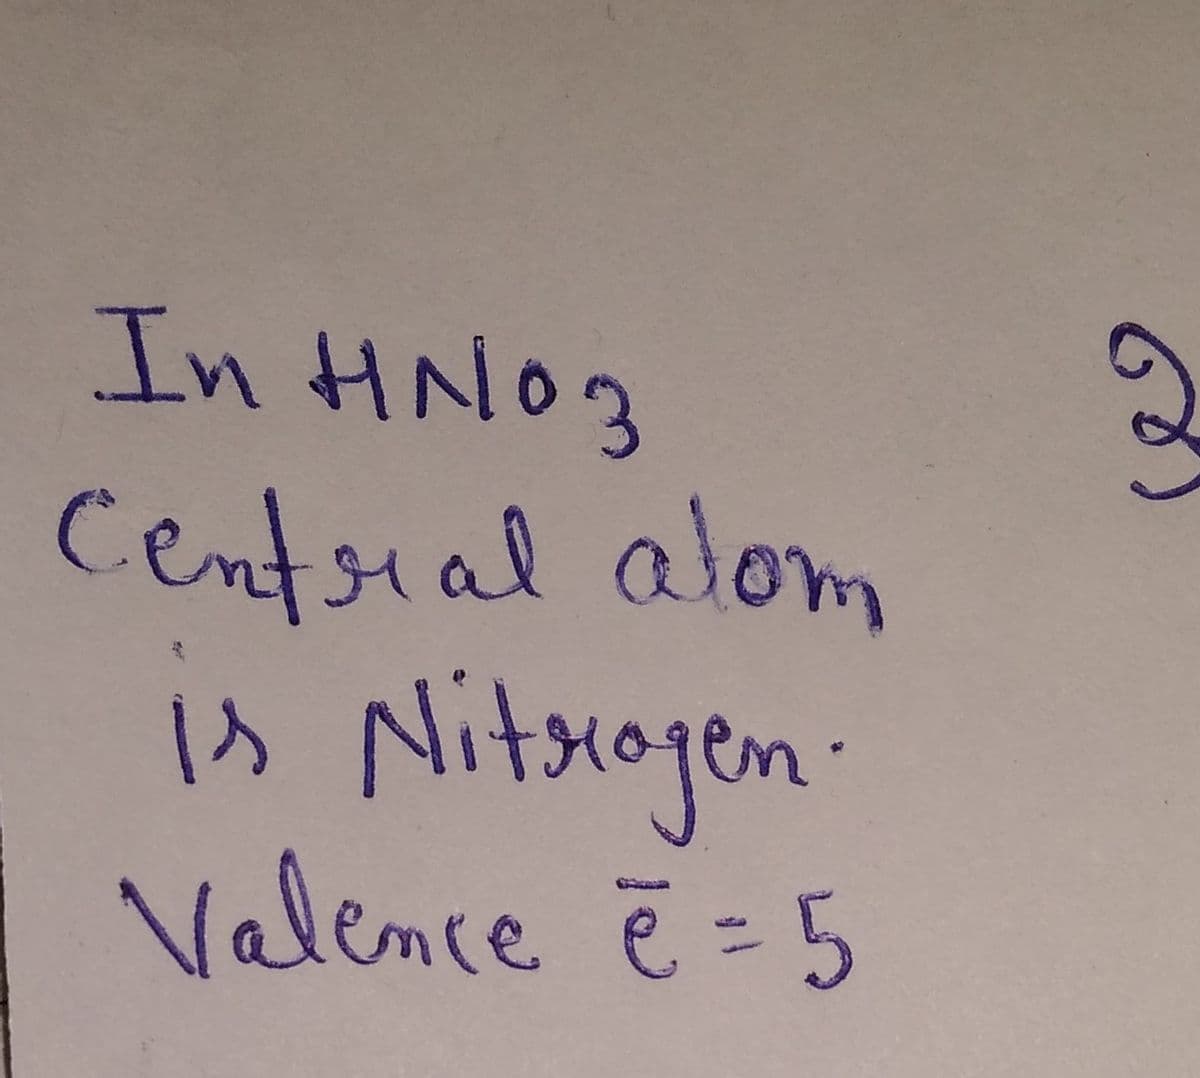 In HNO3
Centsral alom
is Nitxogen:
Valemce ē =5
